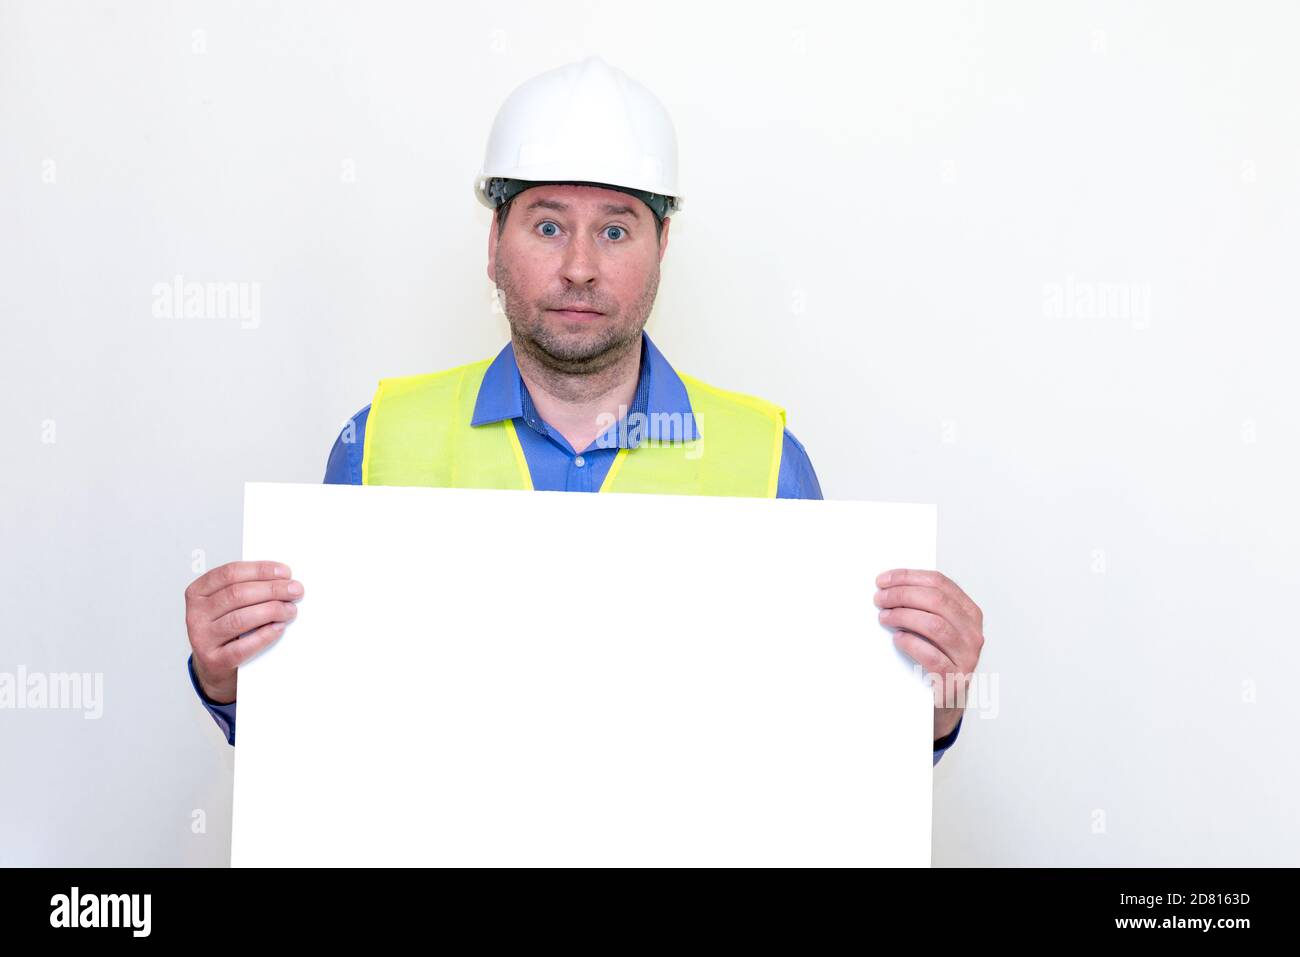 Nahaufnahme Ingenieur Mann trägt einen Helm und Reflektor Weste, stehend und hält eine Plakatwand. Weißer Hintergrund. Stockfoto